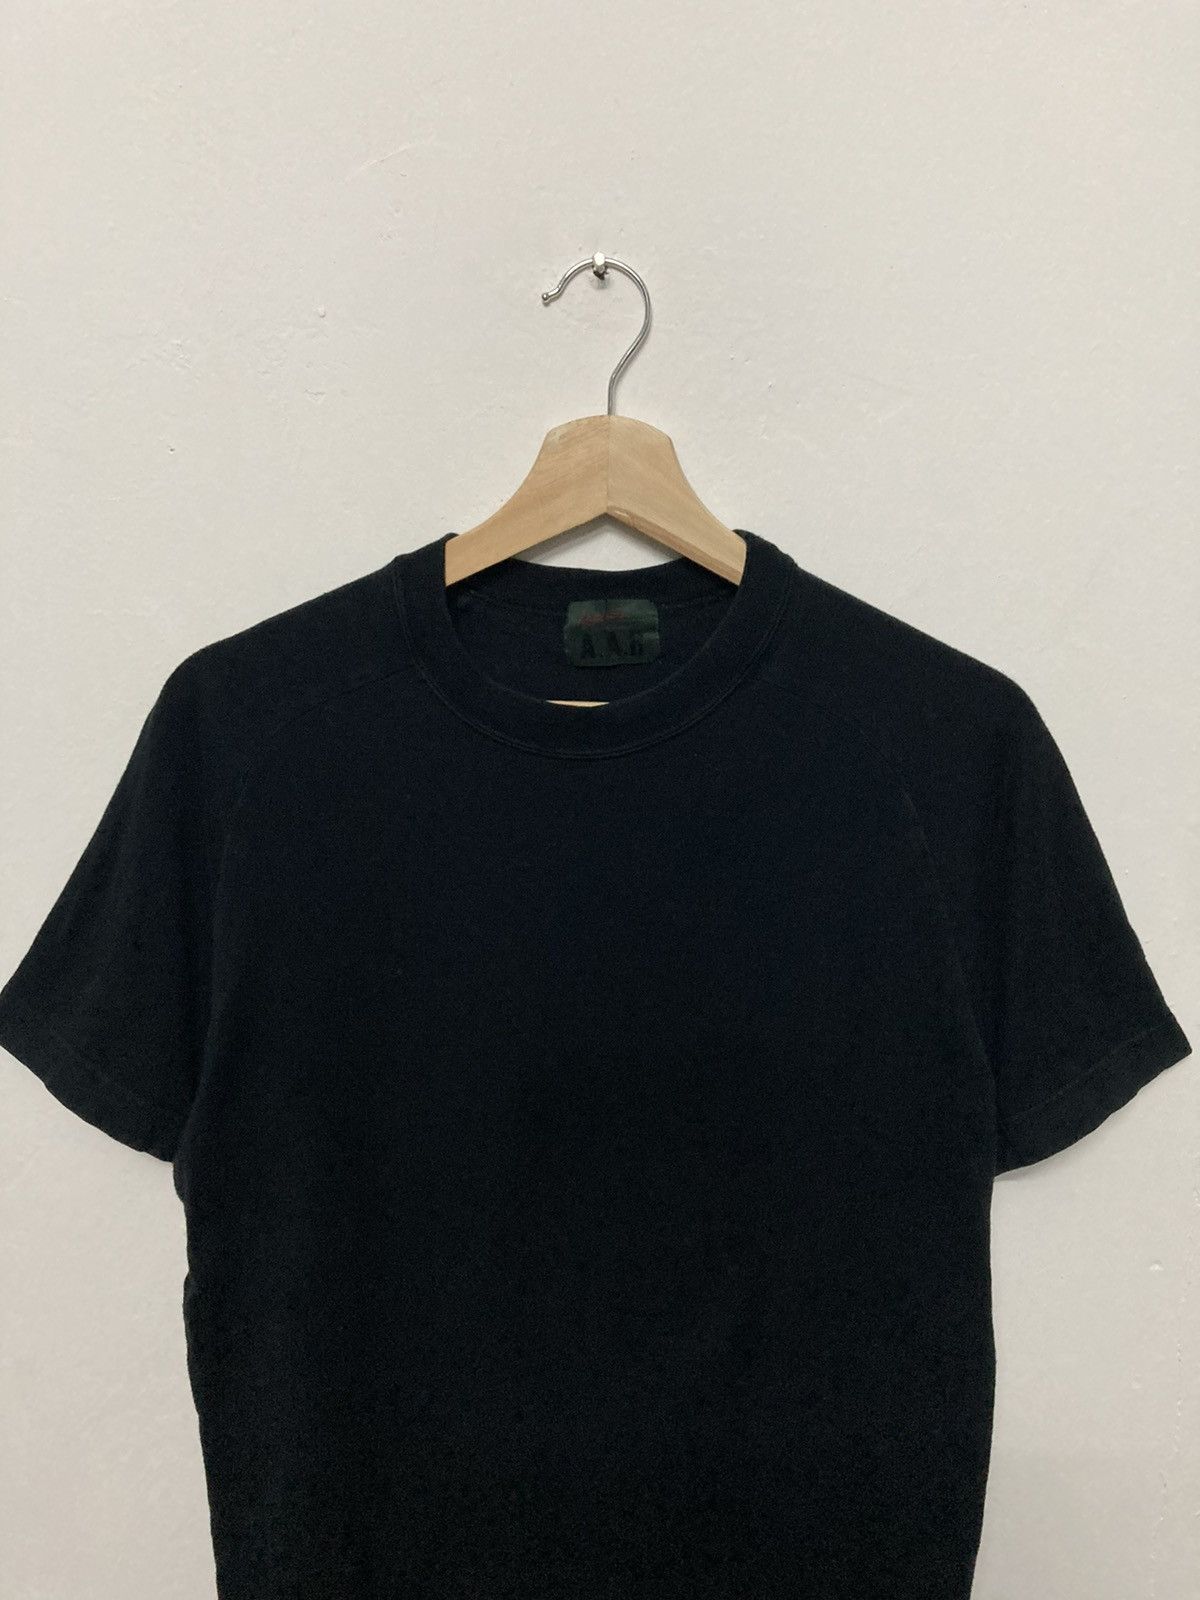 A.A.R Yohji Yamamoto x Durban Black Plain Shirt - 3